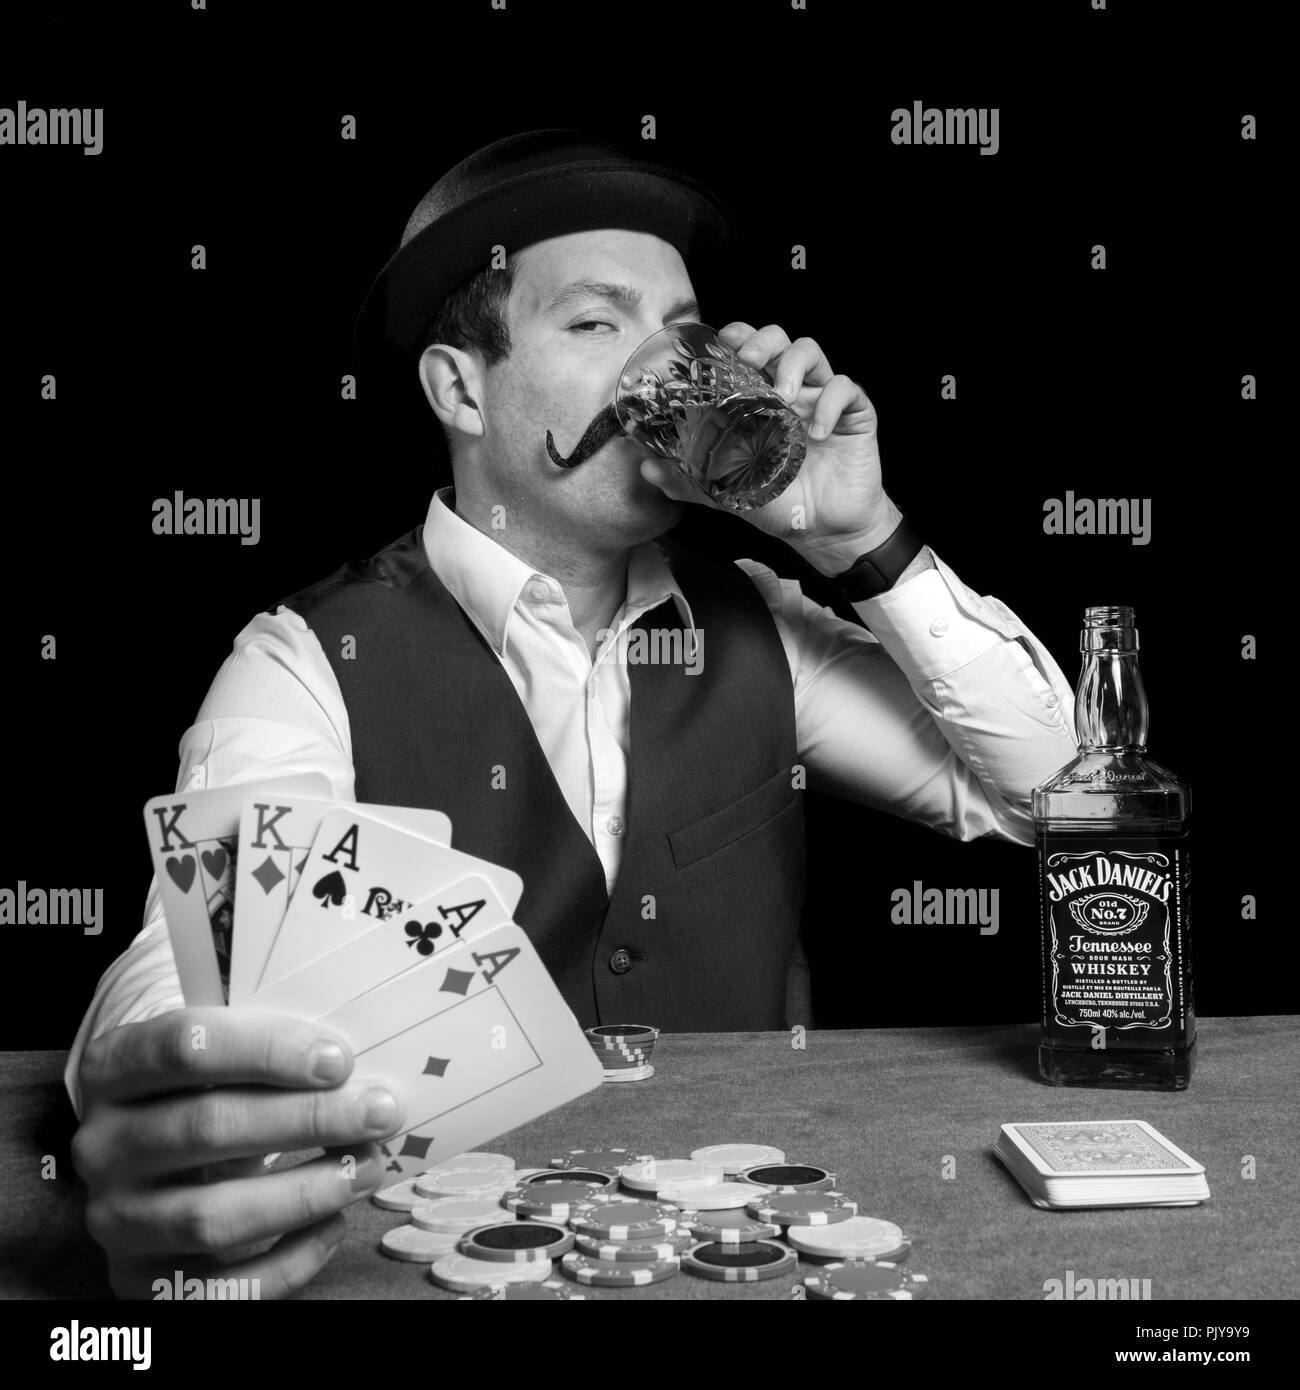 Mann mit Melone Hut, Alkohol zu trinken und gewinnt ein Spiel von poker Jack  Daniel's Karten Spiel Funny fake vintage Fotografie Stockfotografie - Alamy